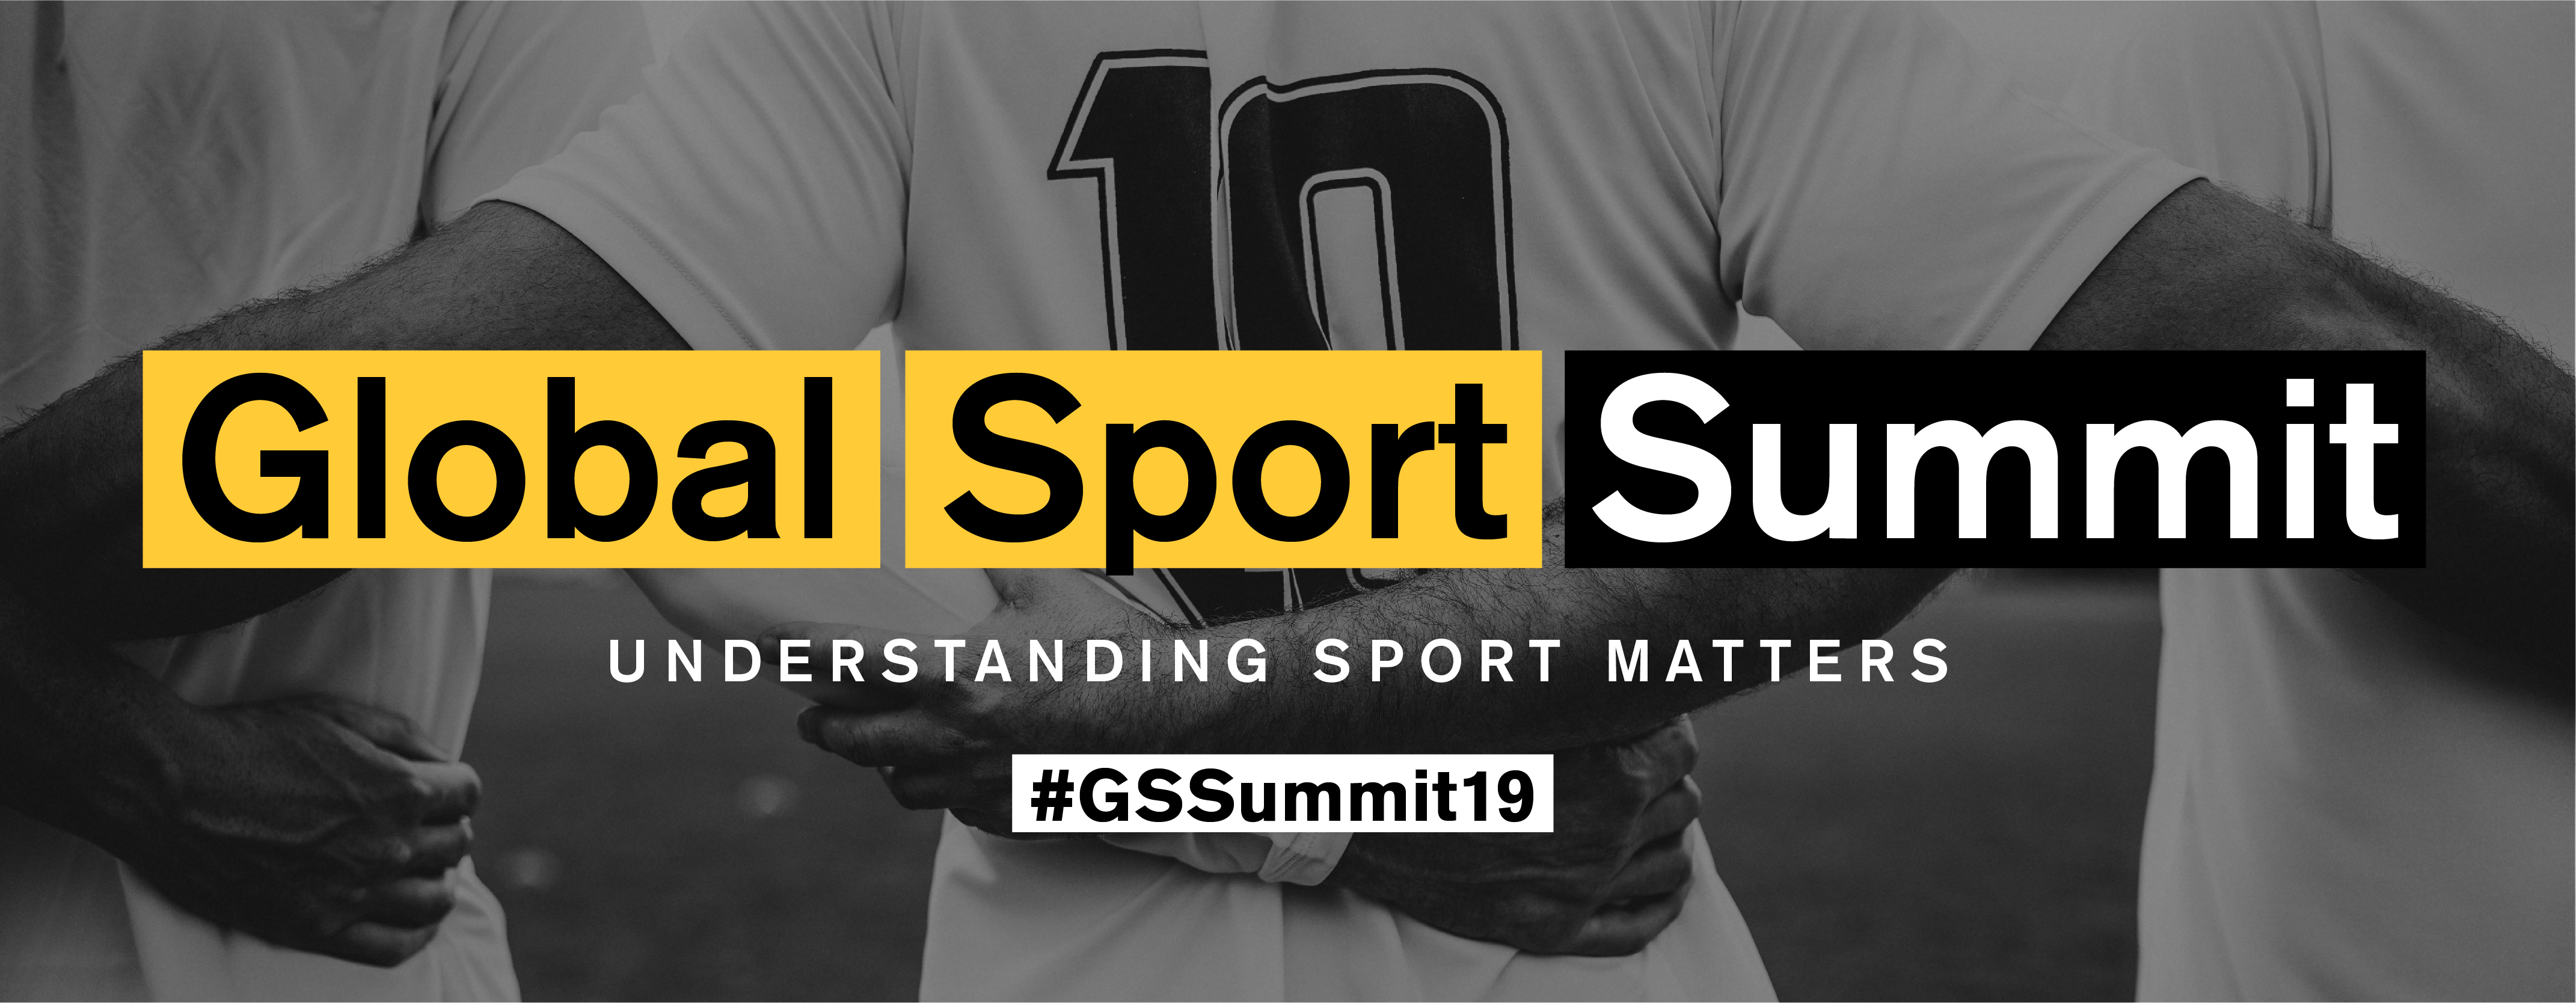 Global Sport Summit 2019